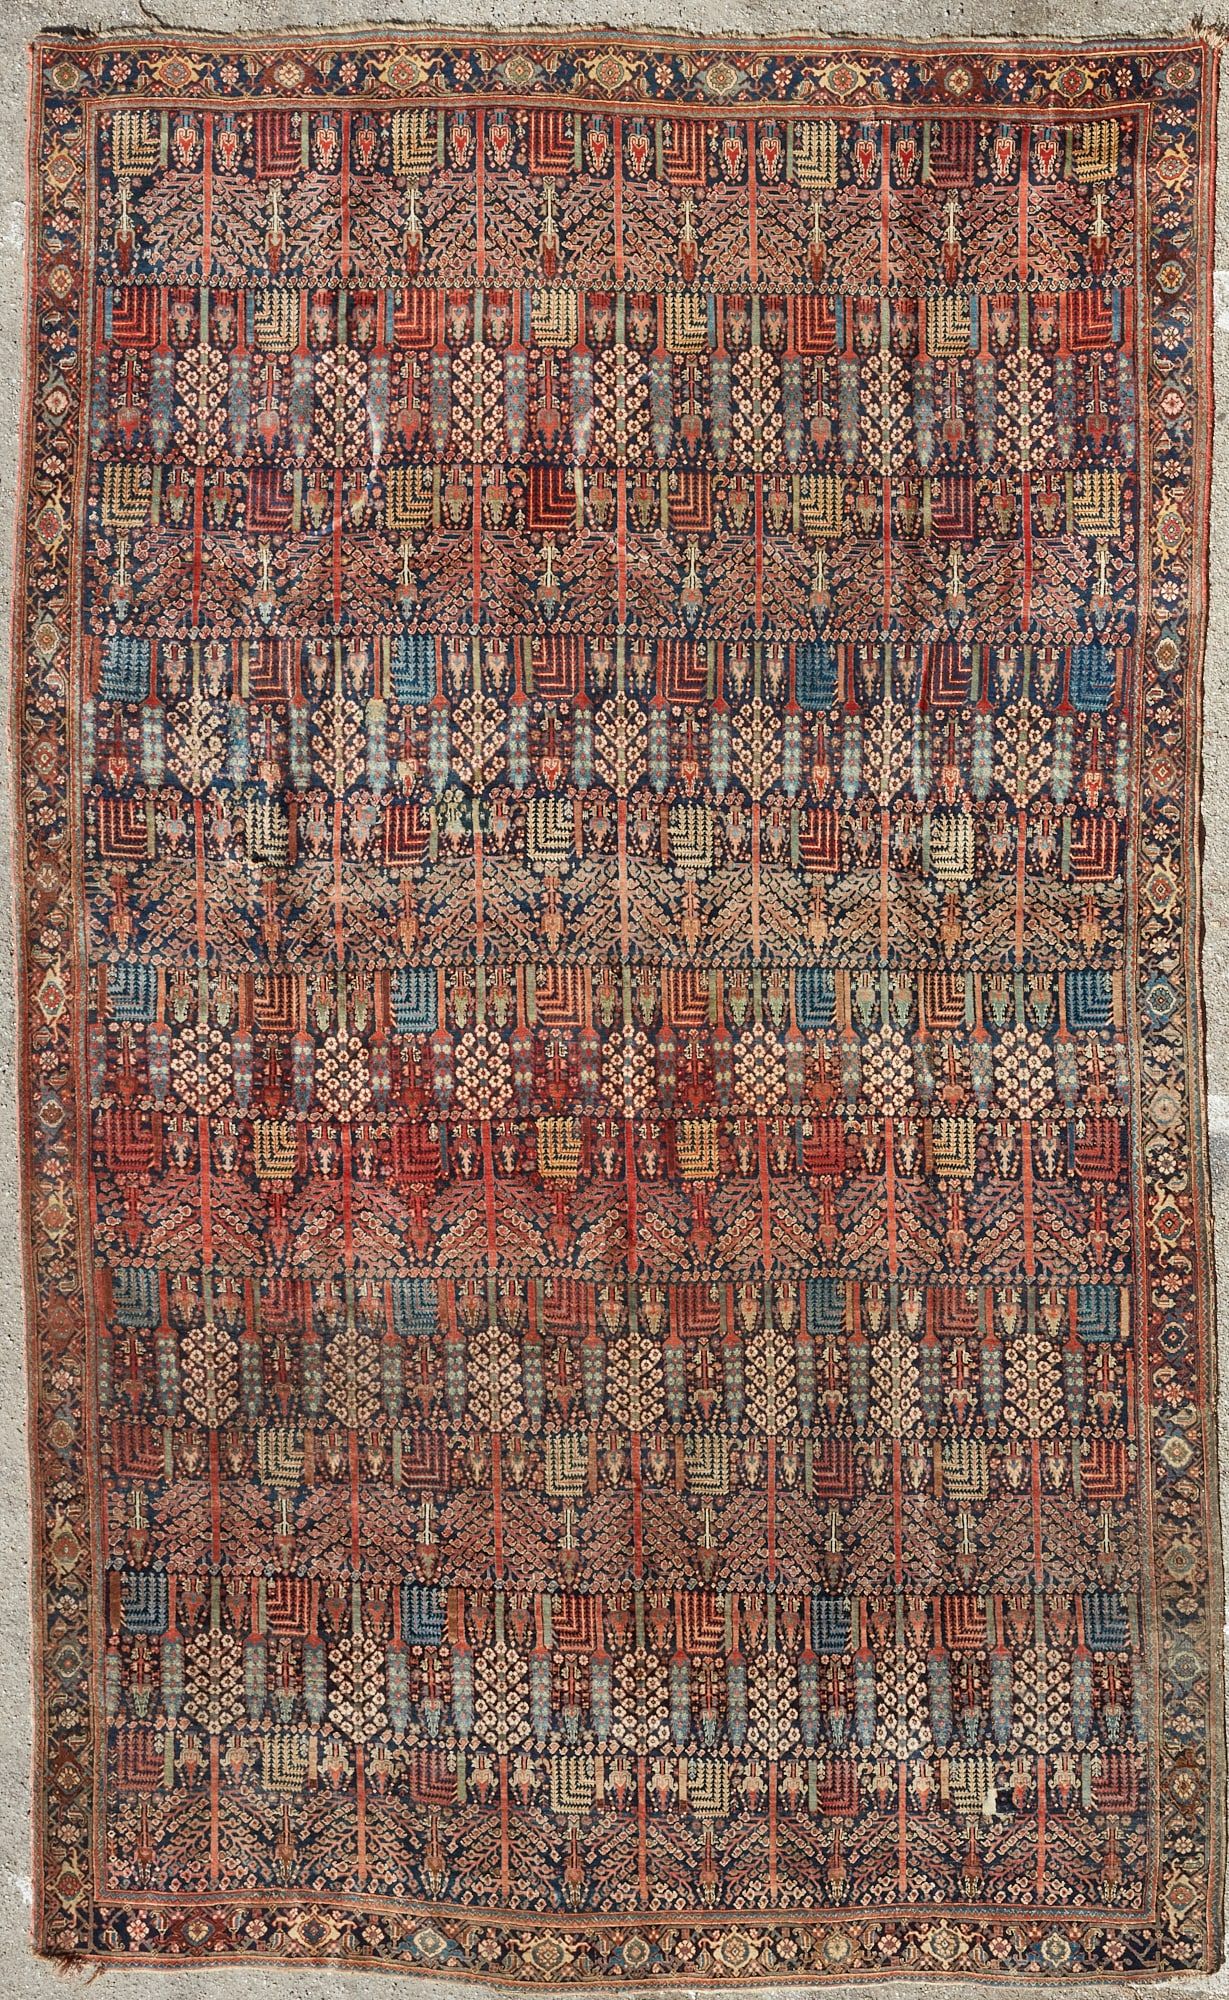 A PERSIAN CARPETA Persian carpetdimensions